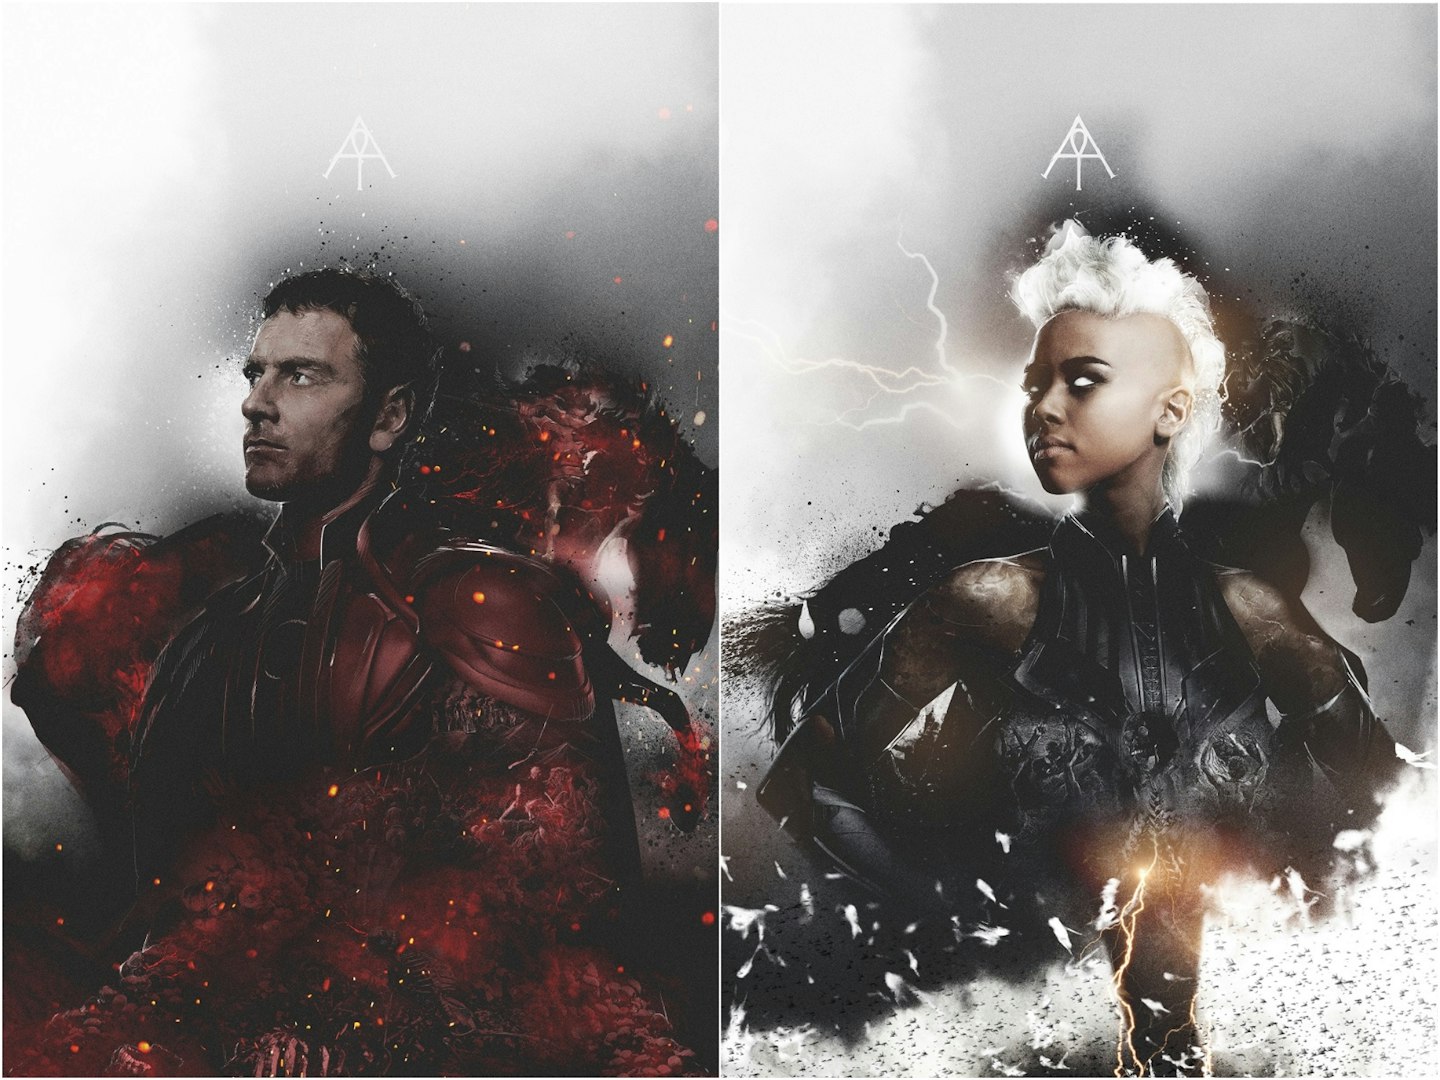 X-Men: Apocalypse Horsemen character posters